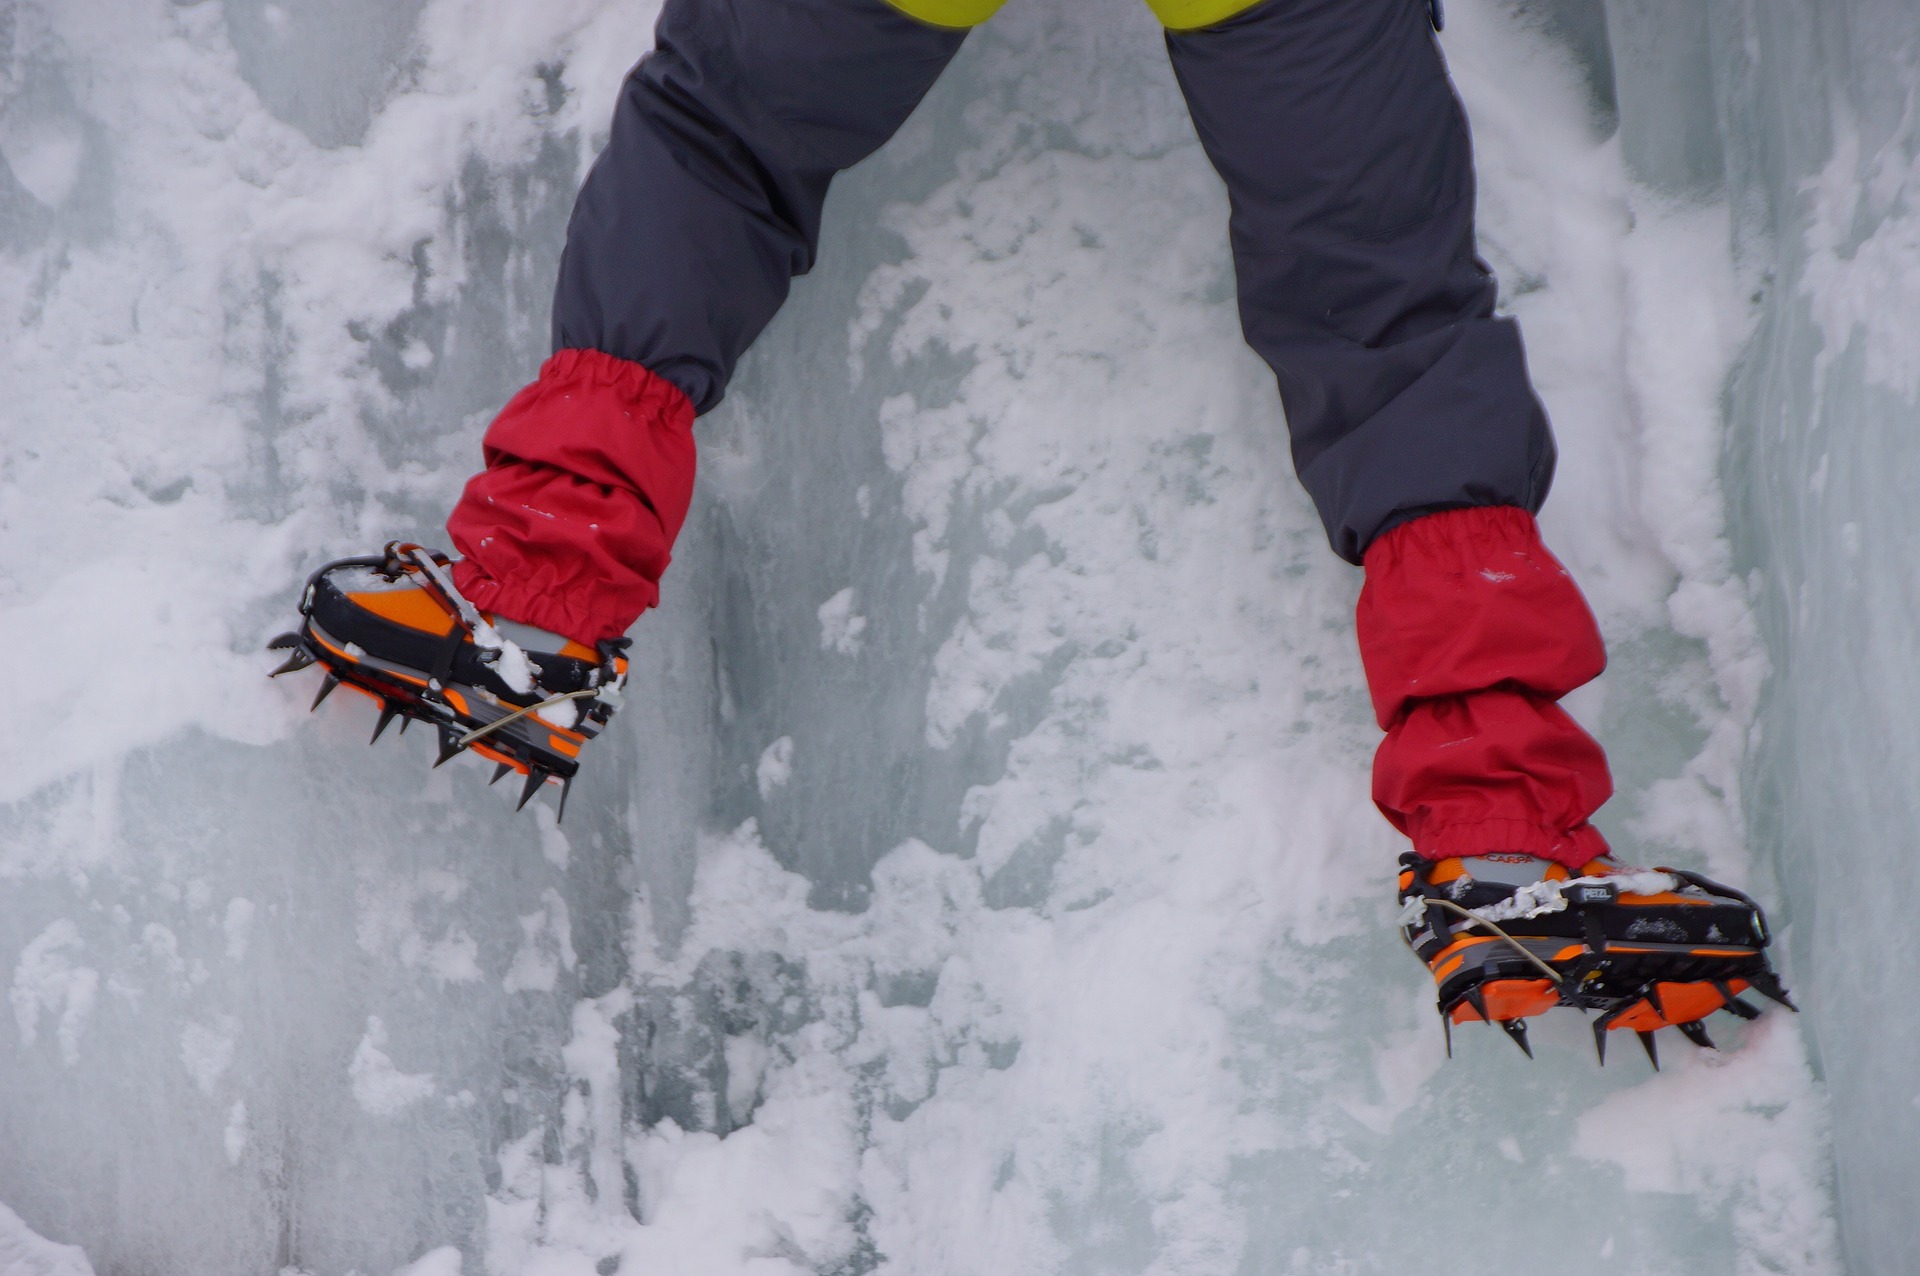 Camina Seguro sobre nieve o hielo con los prácticos Crampones de